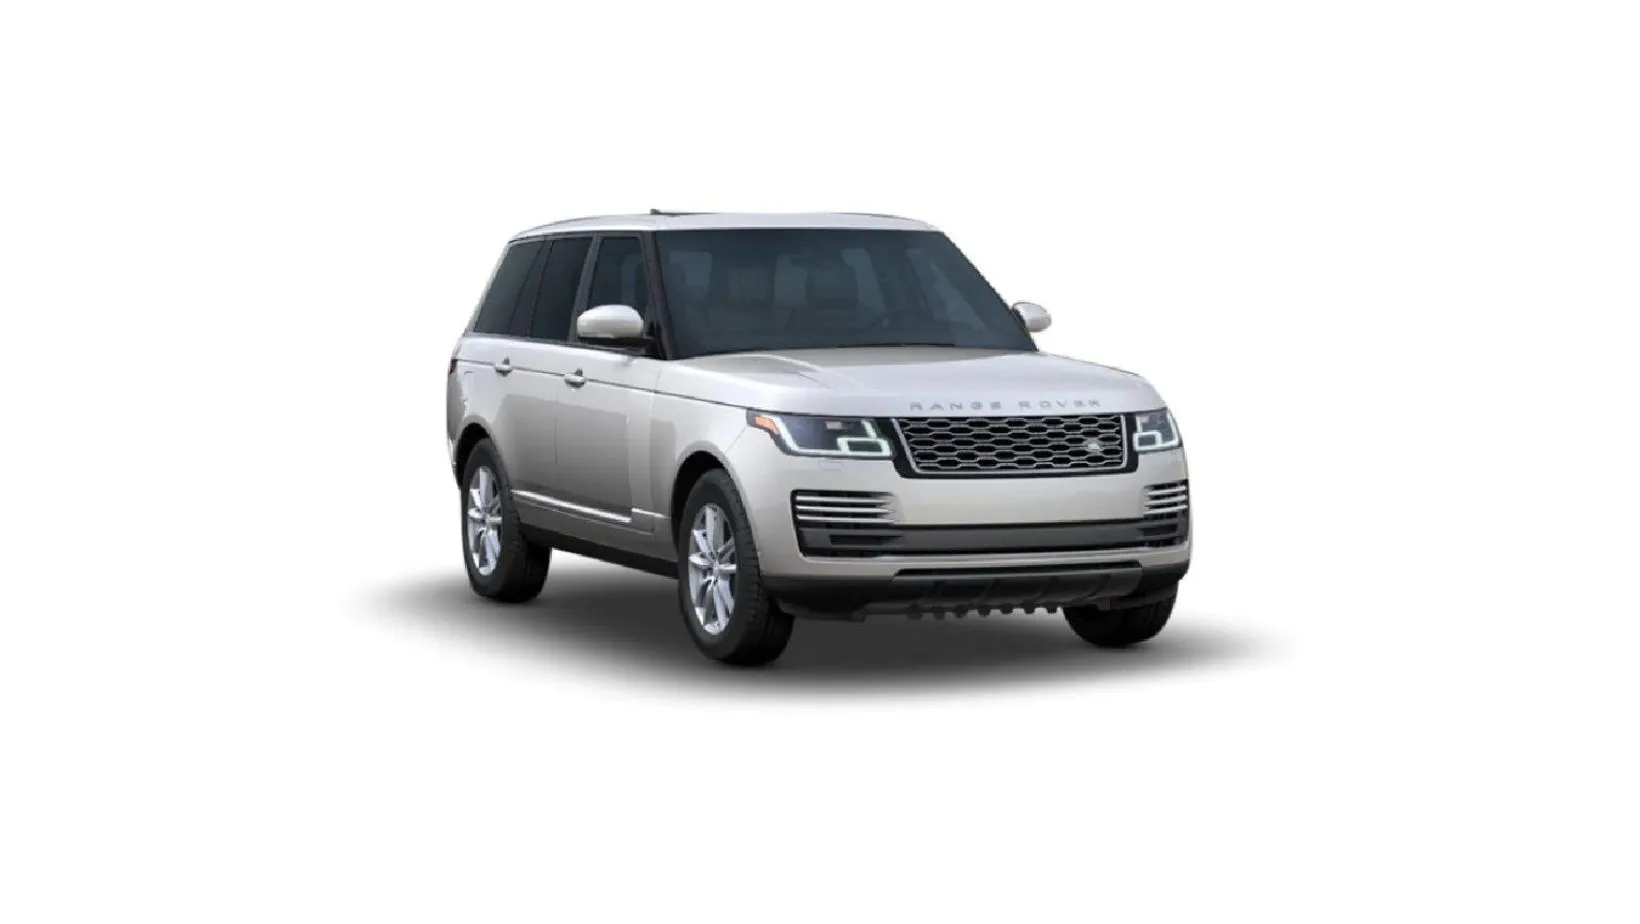 Land Rover Range Rover Price in Sri Lanka